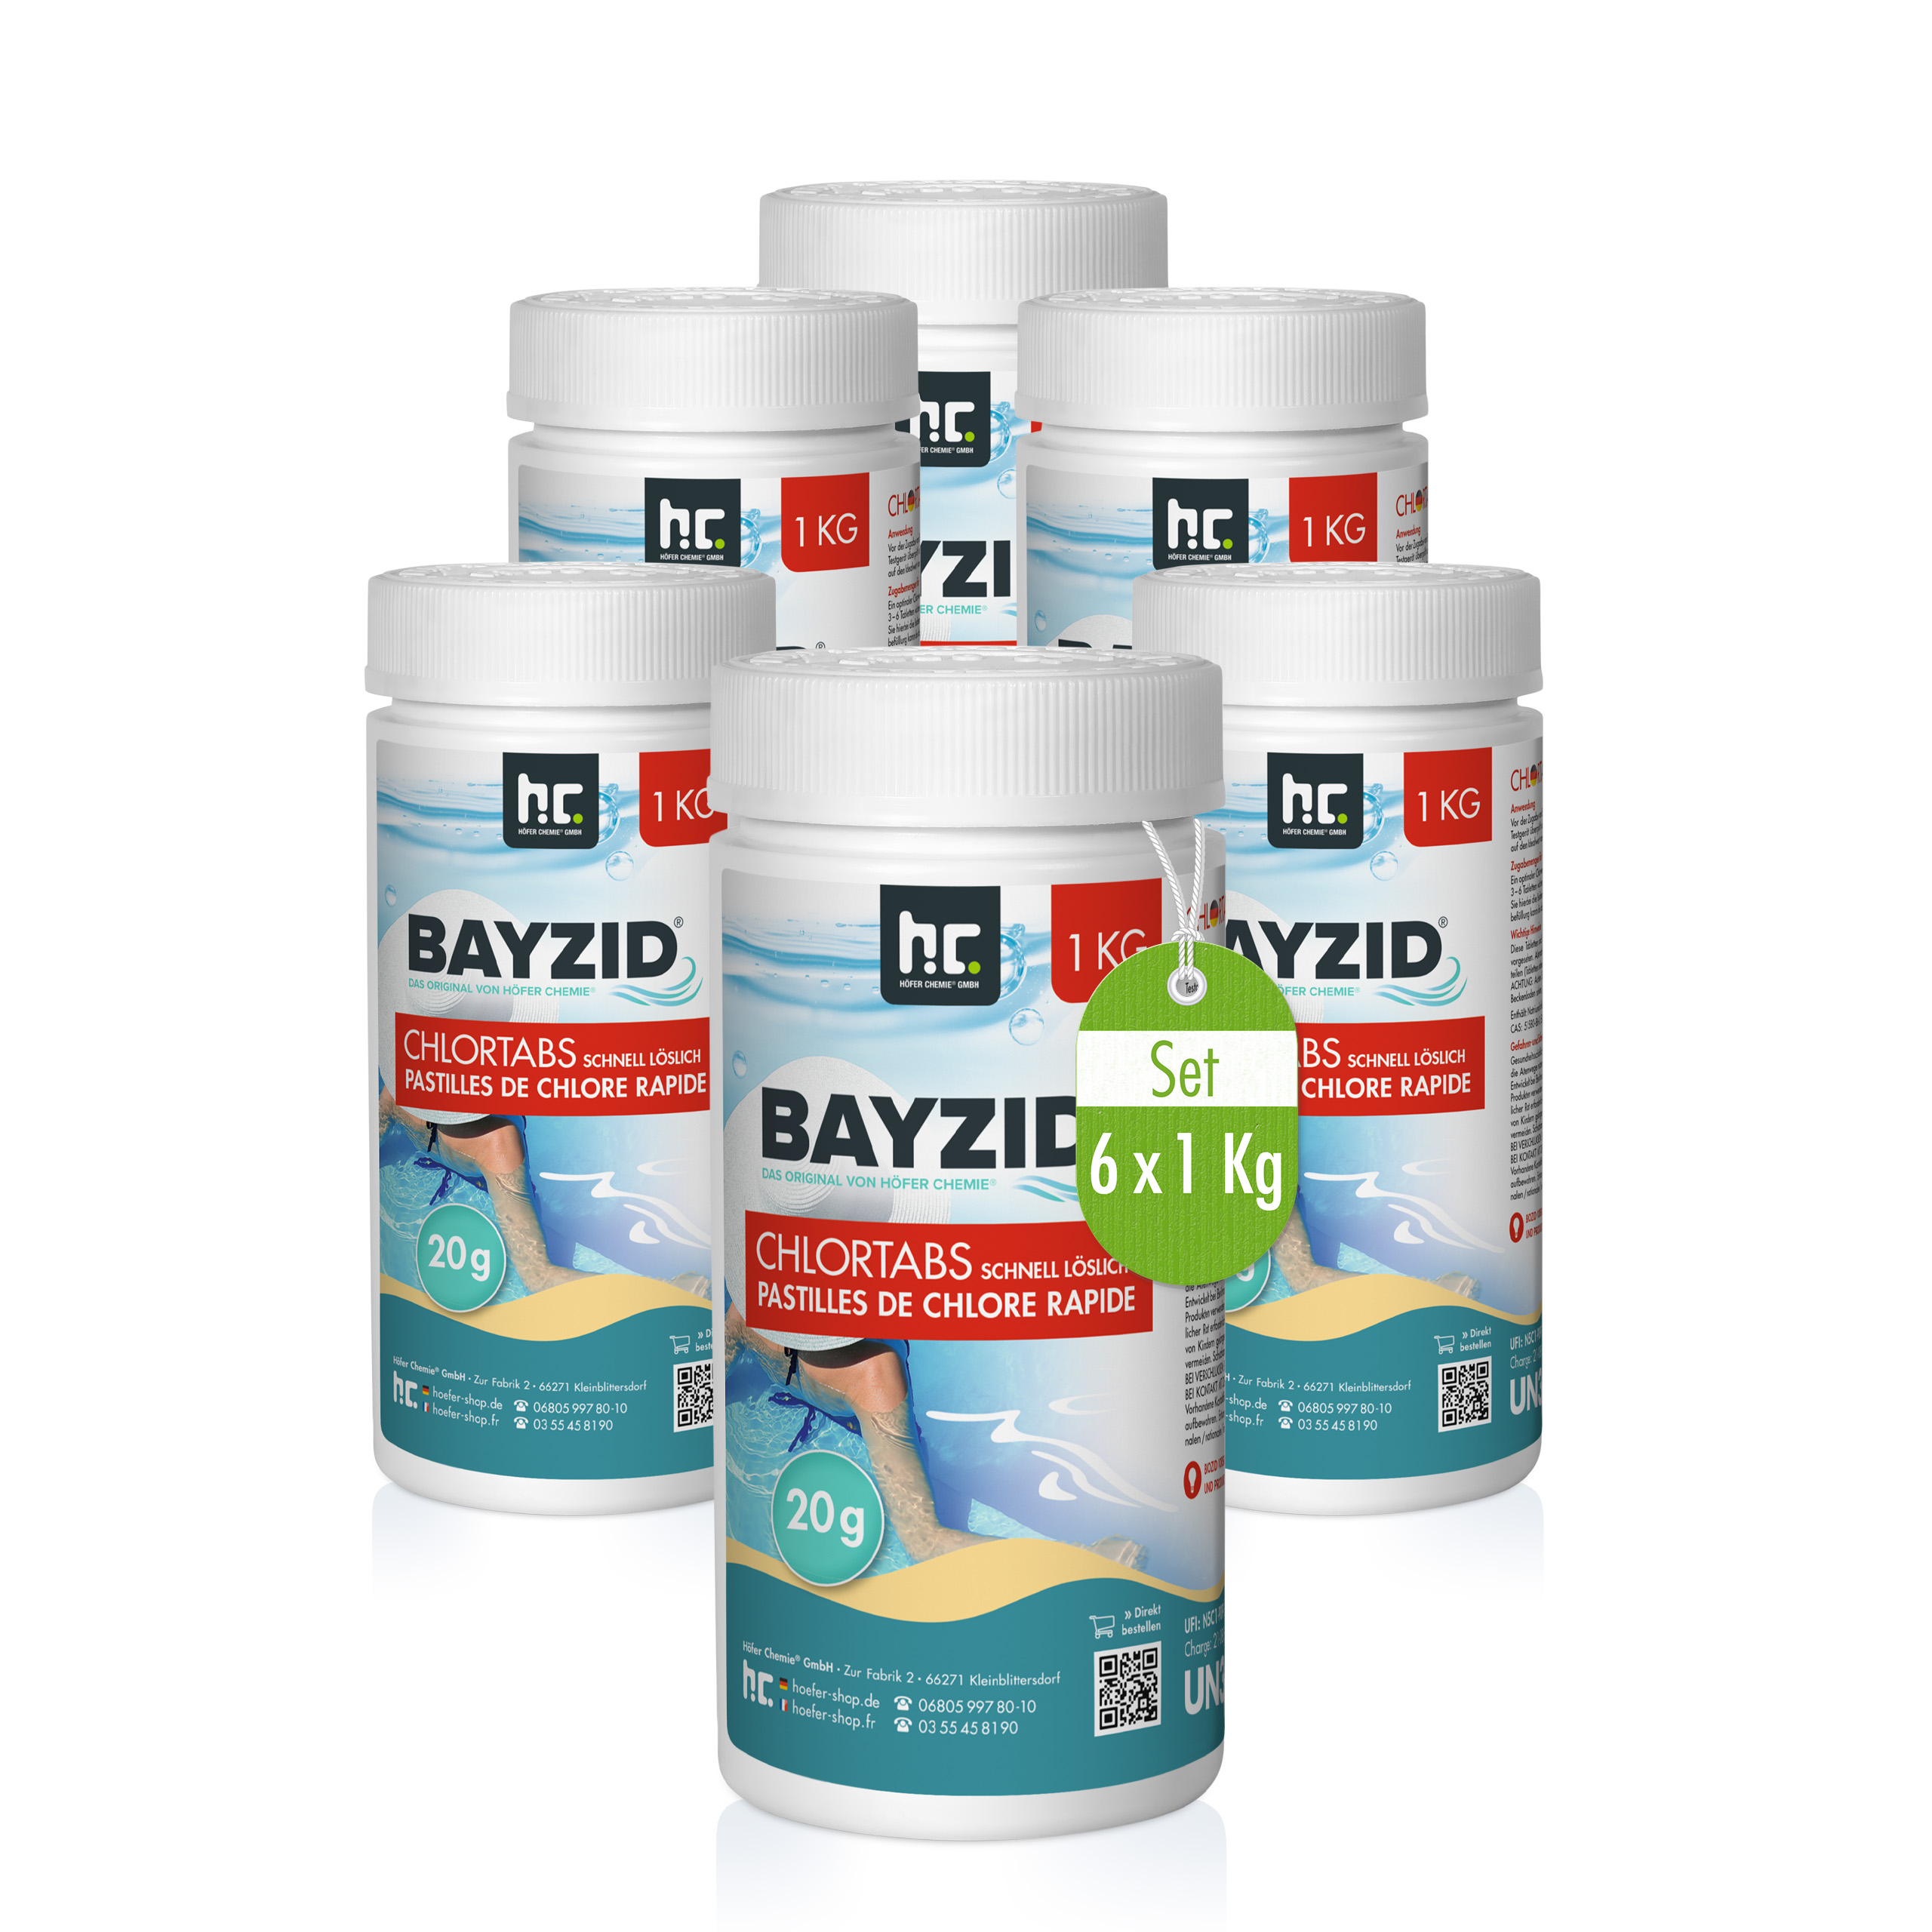 1 kg BAYZID® Chlortabs 20g schnell löslich